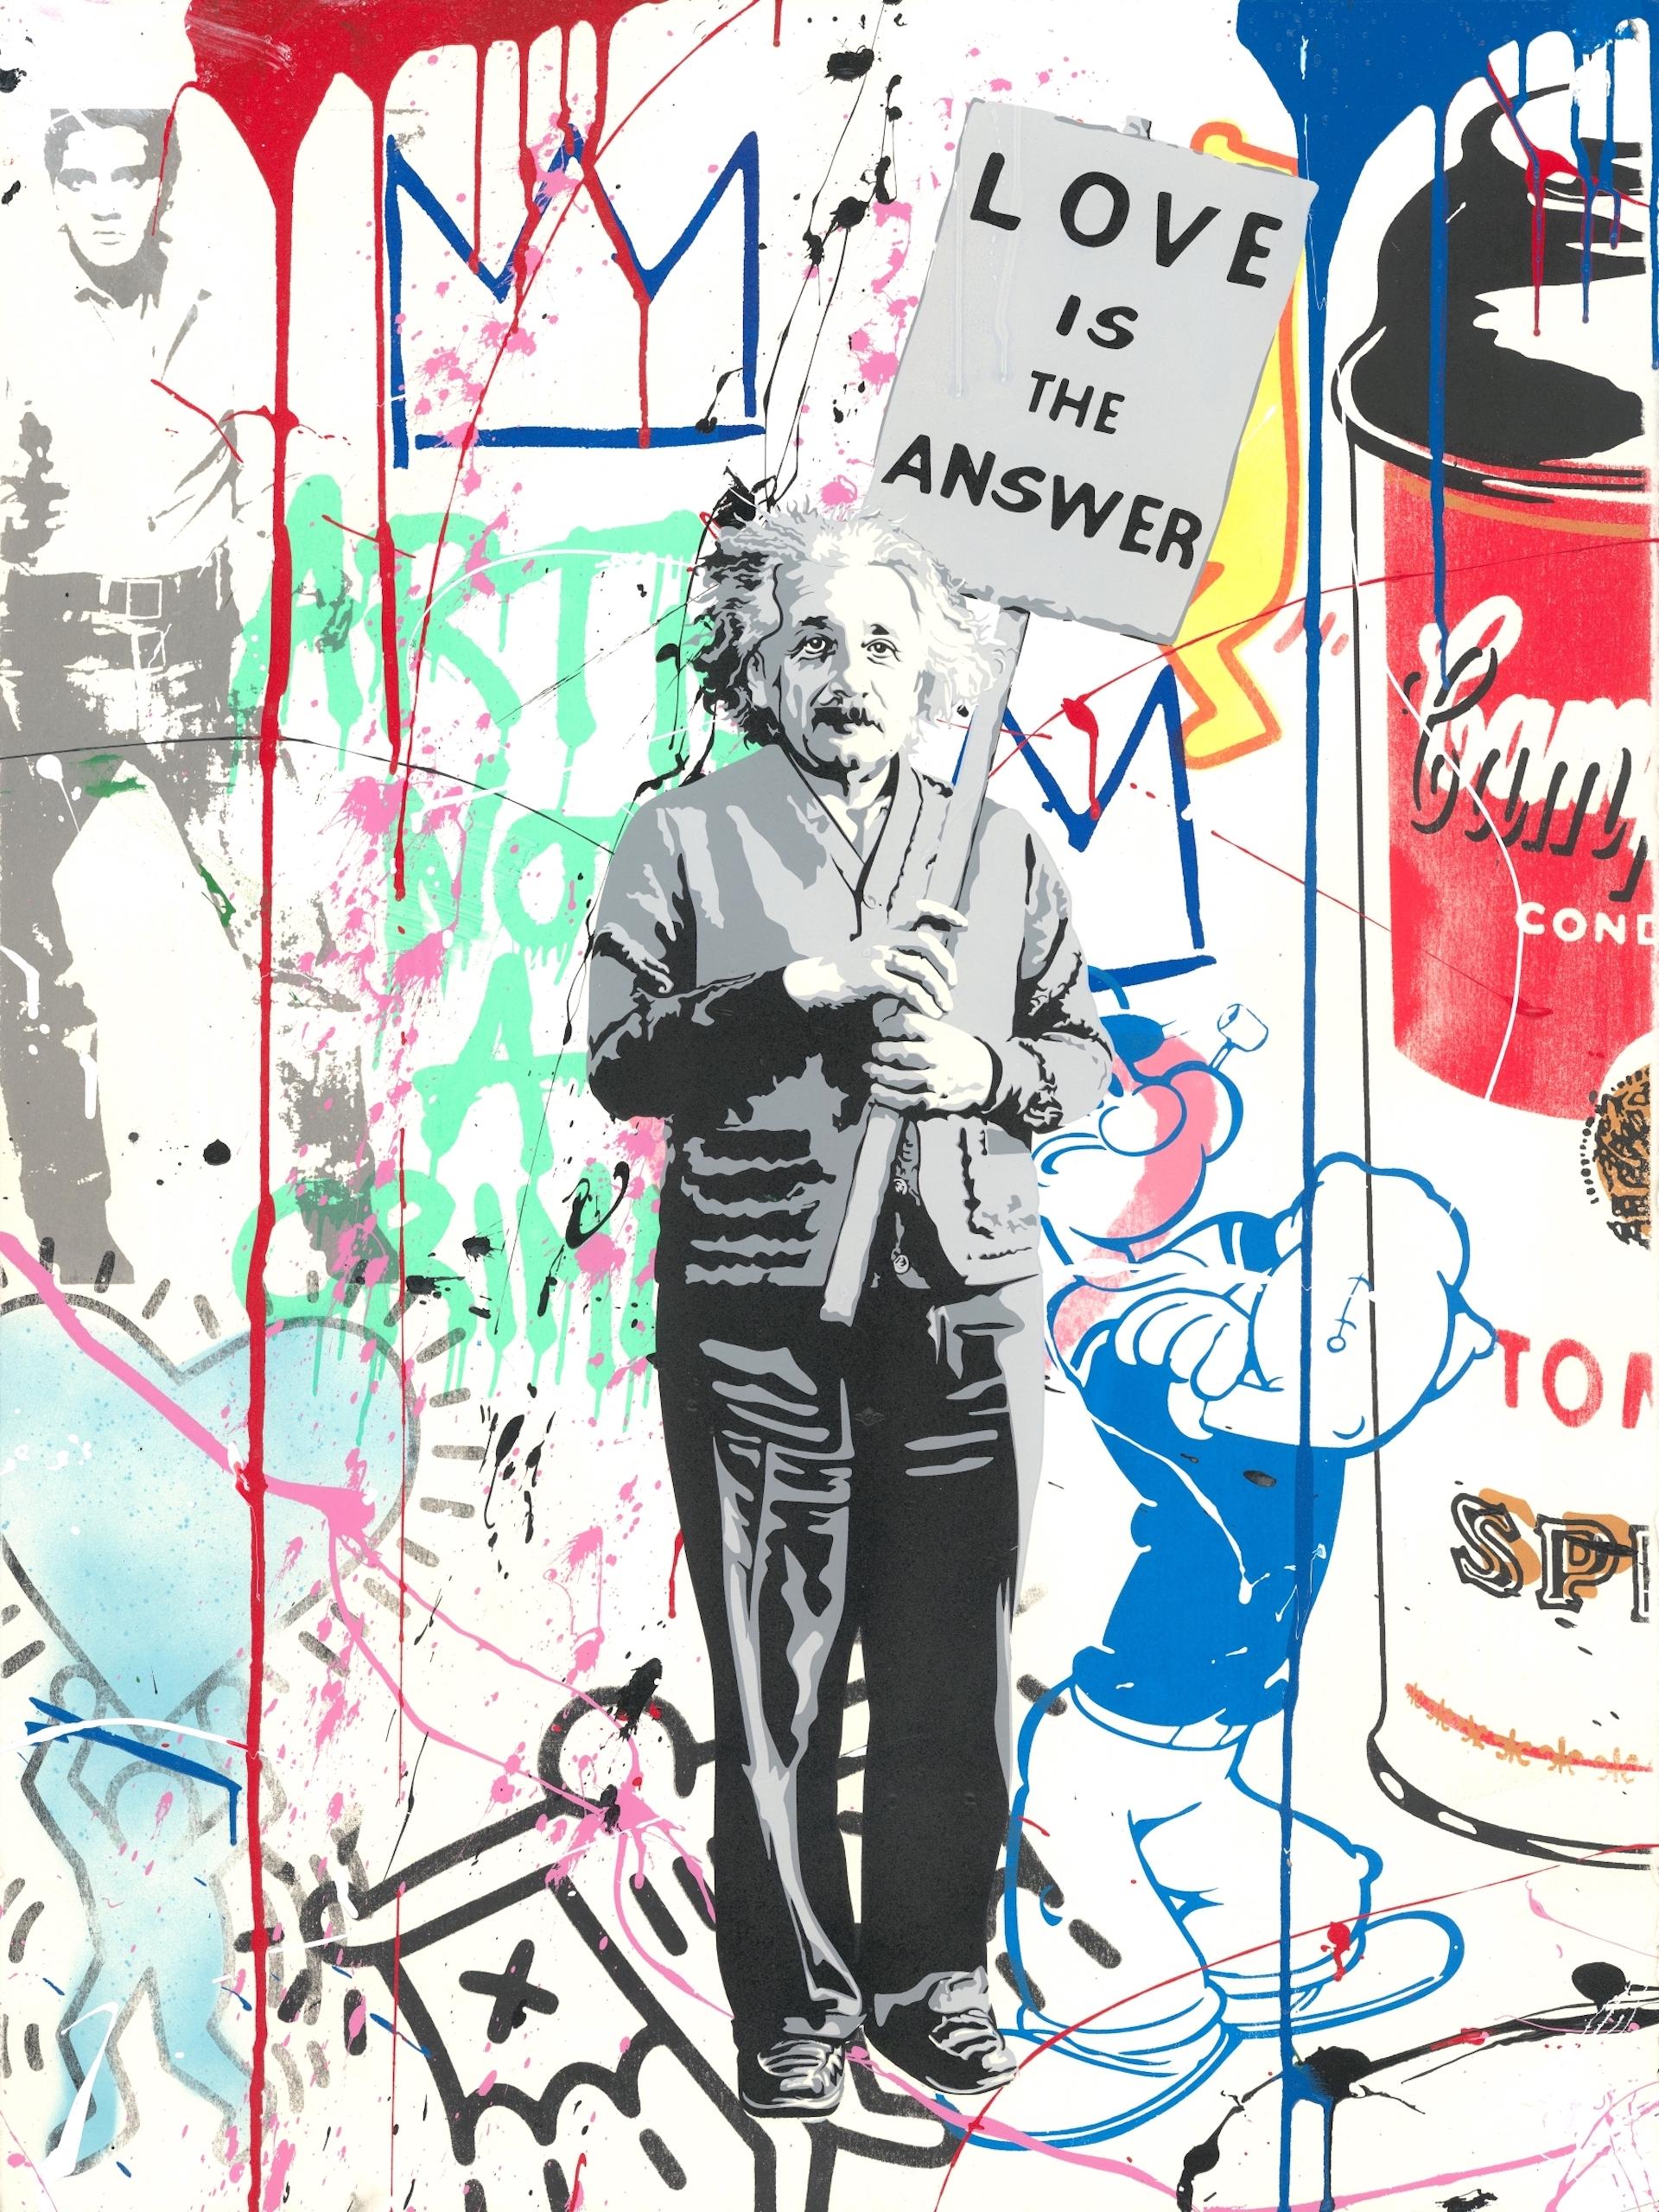 Einstein meets Elvis - Mixed Media Art by Mr. Brainwash